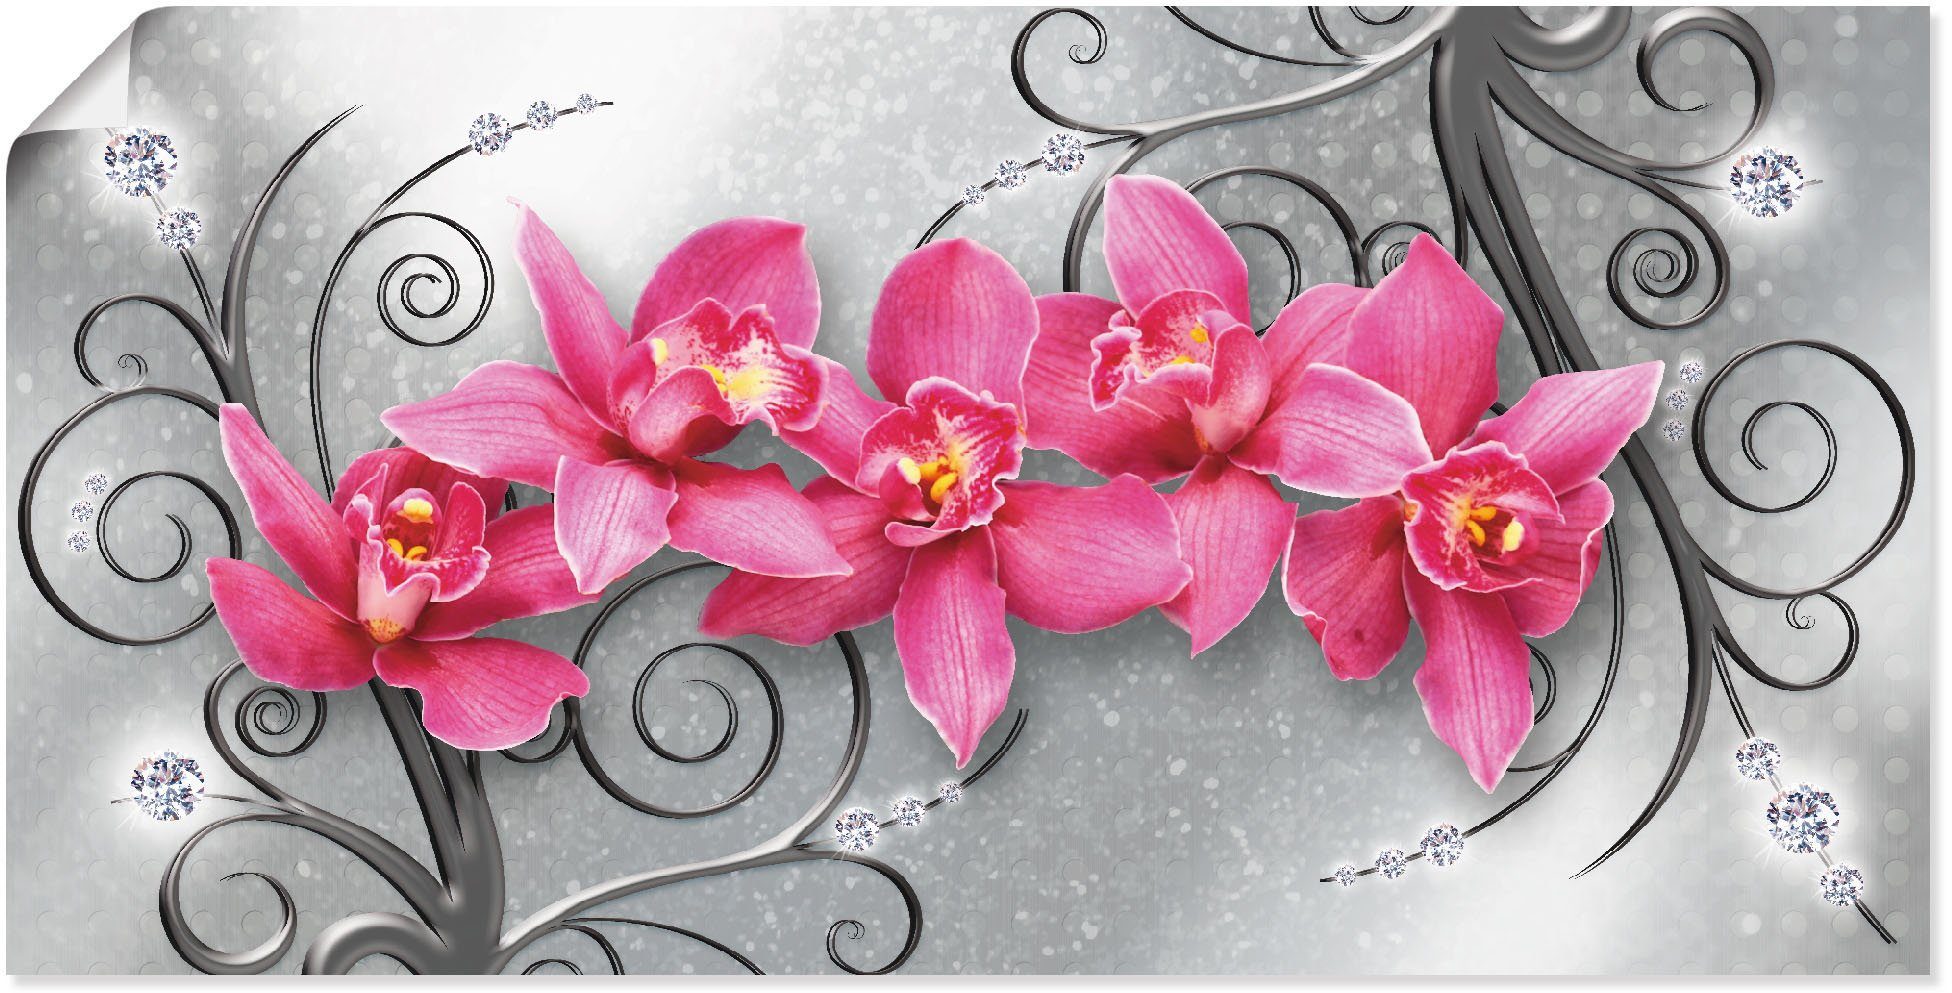 Artland Artprint Roze pioenrozen in glazen vaas - Roze orchideeën op ornamenten in vele afmetingen & productsoorten - artprint van aluminium / artprint voor buiten, artprint op lin